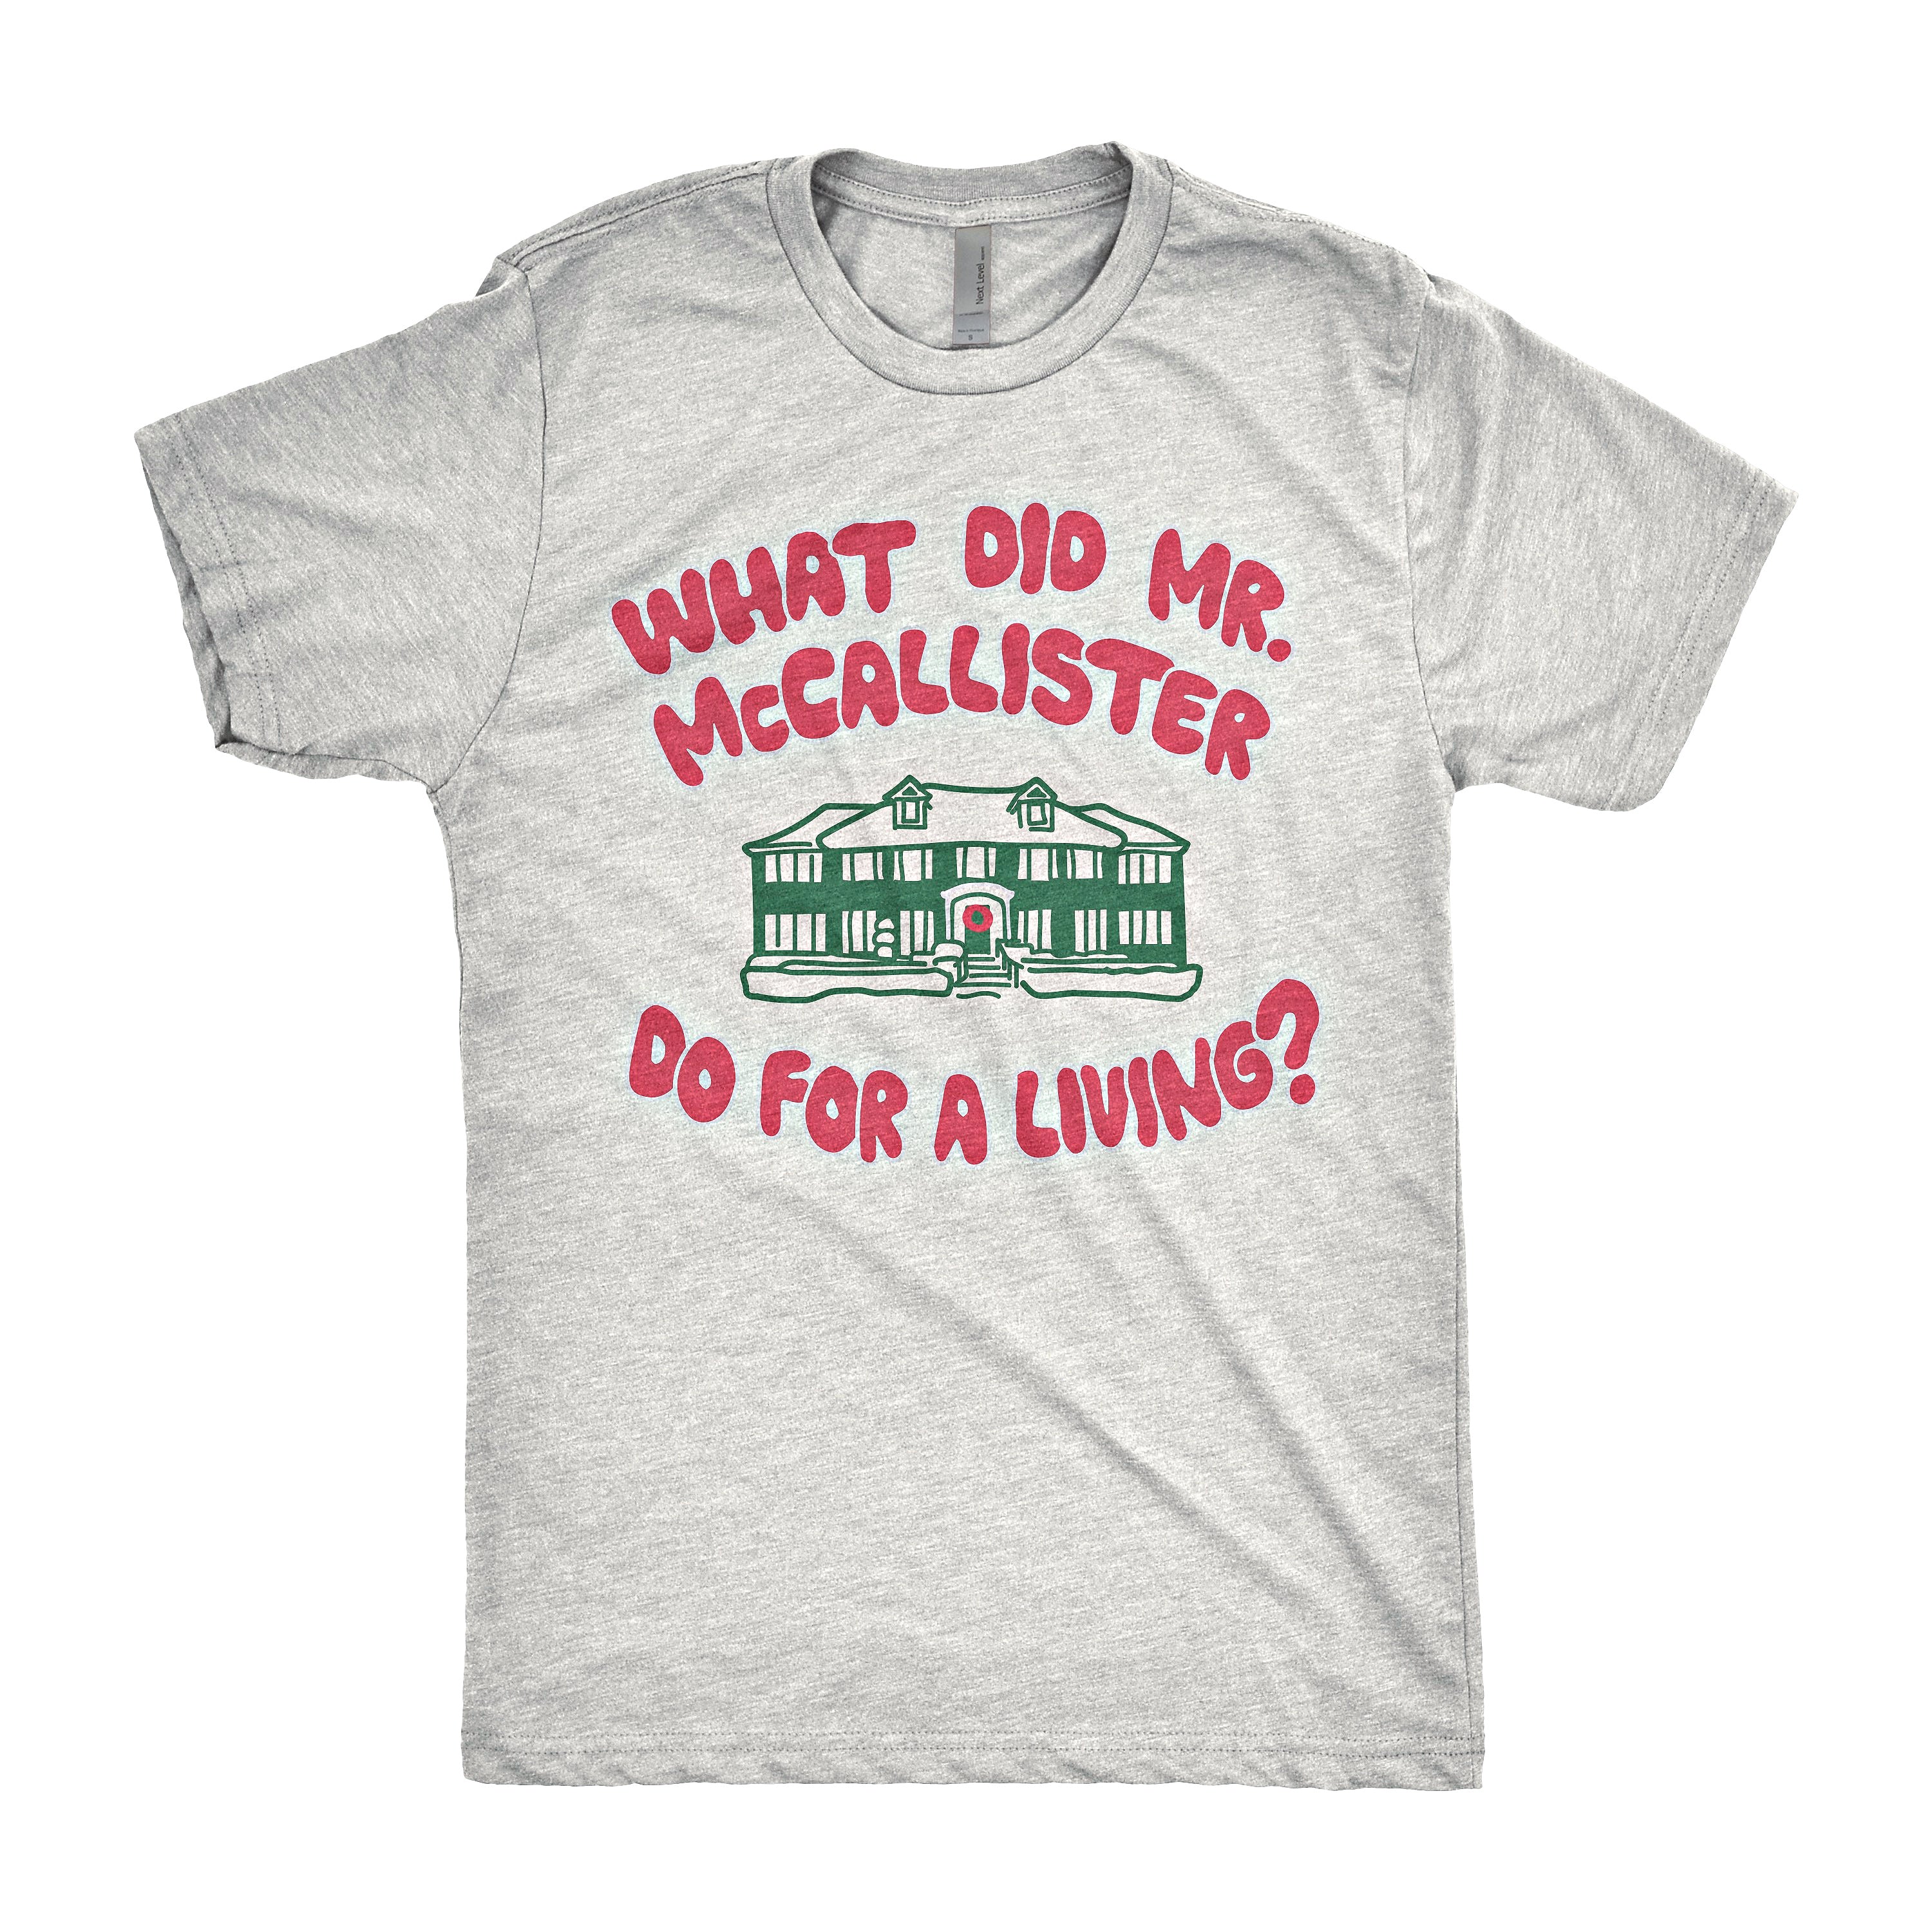 Mr. McCallister Shirt